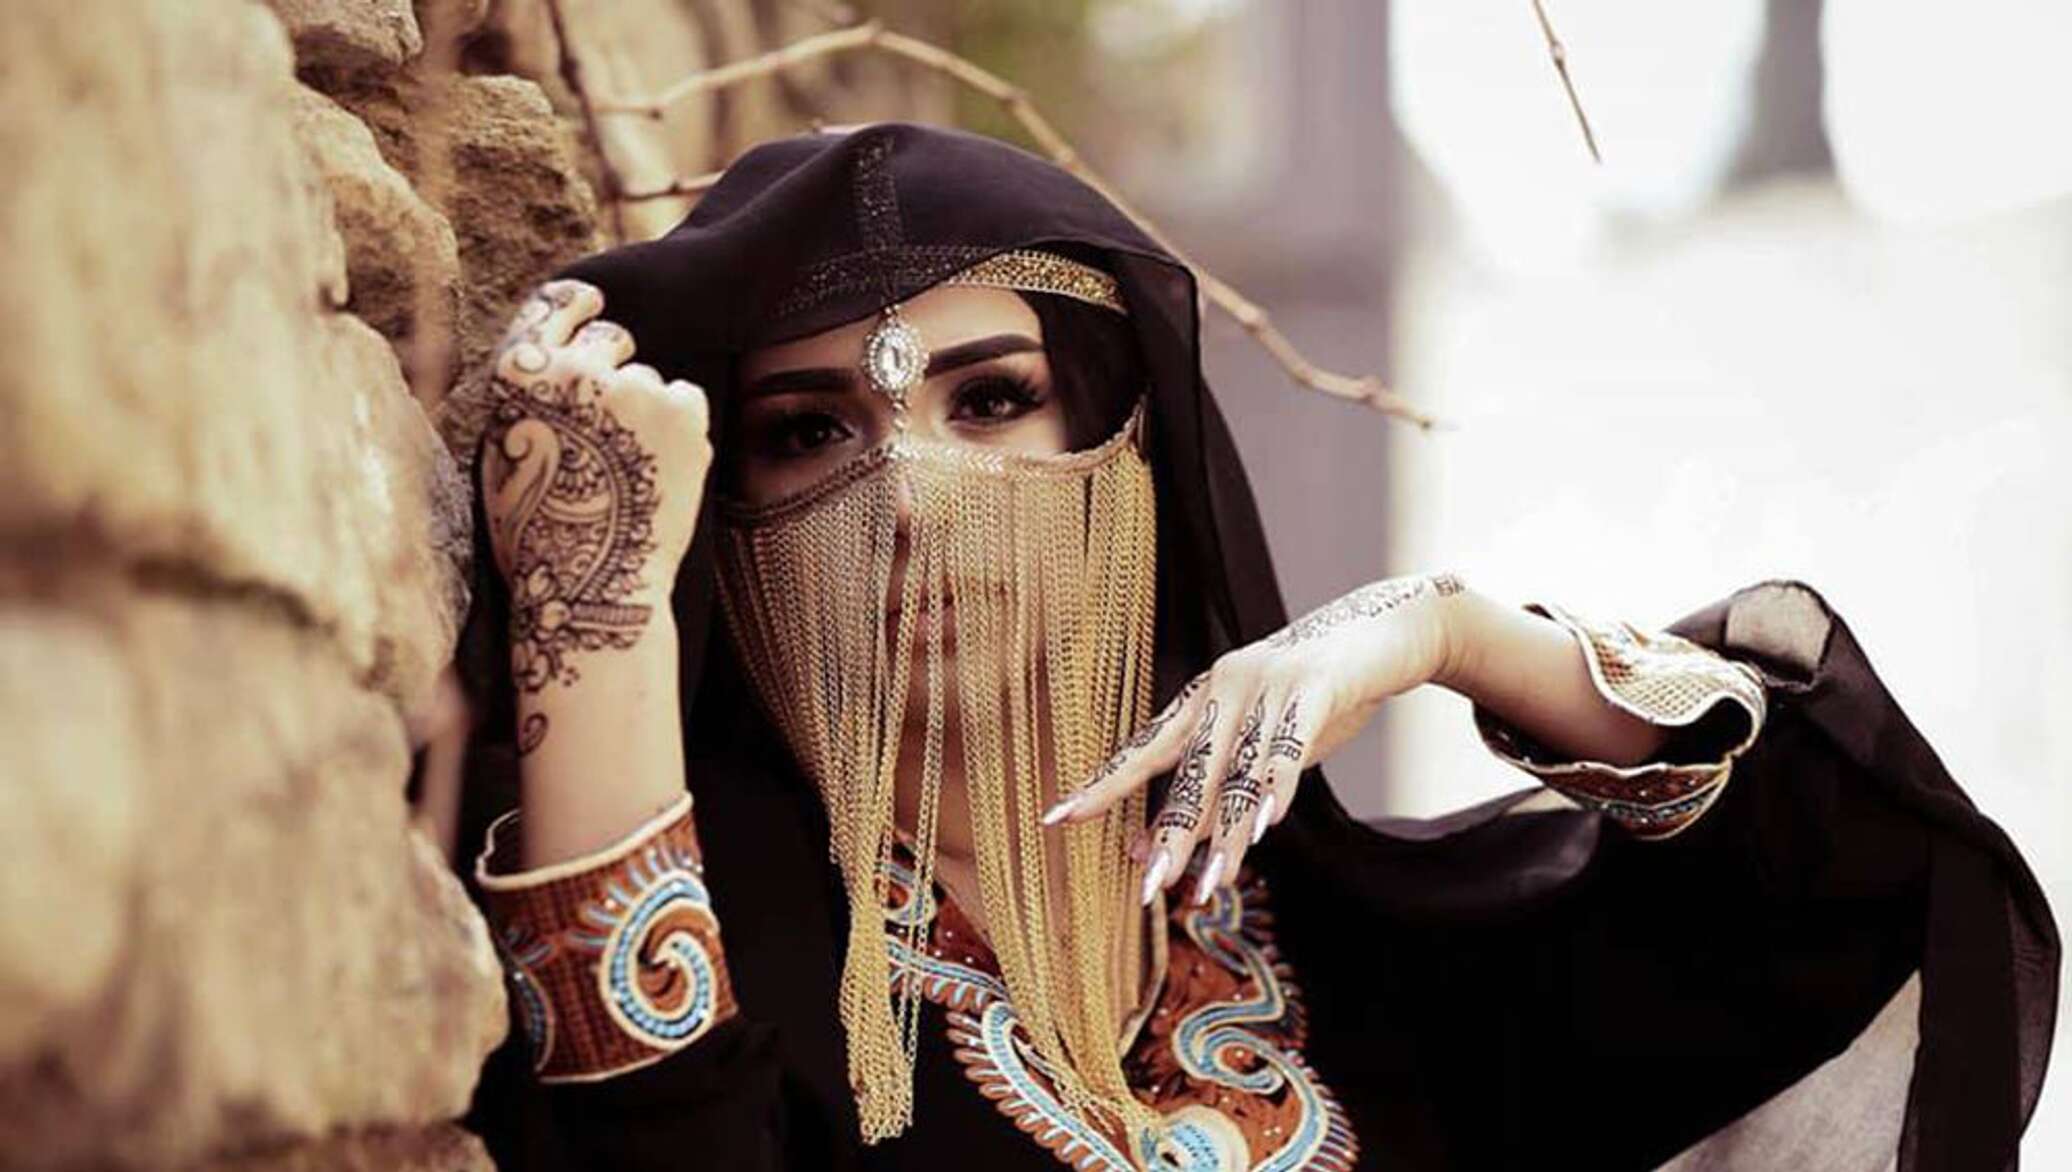 Ethnic music best deep. Восточные девушки. Арабские женщины. Фотосессия в стиле Восток. Фотосессия в Восточном стиле.